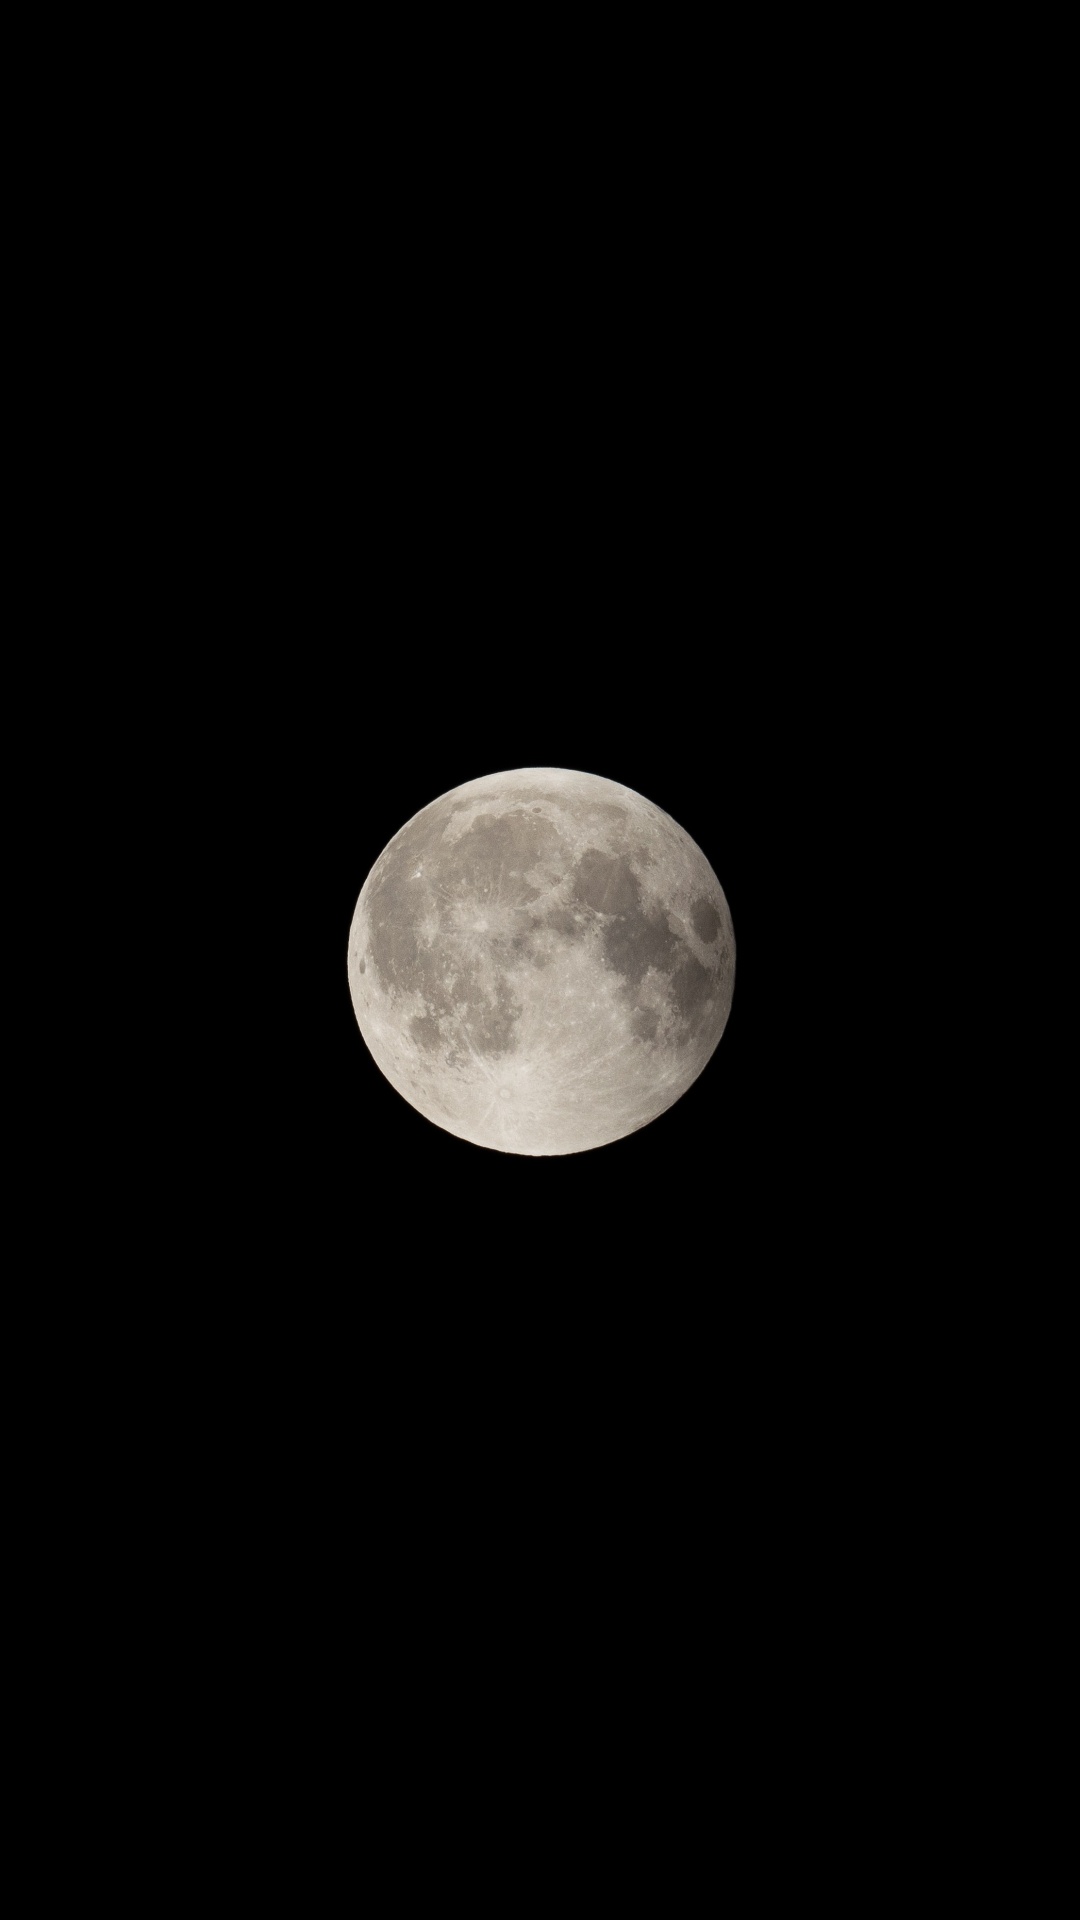 Full Moon in Dark Night Sky. Wallpaper in 1080x1920 Resolution